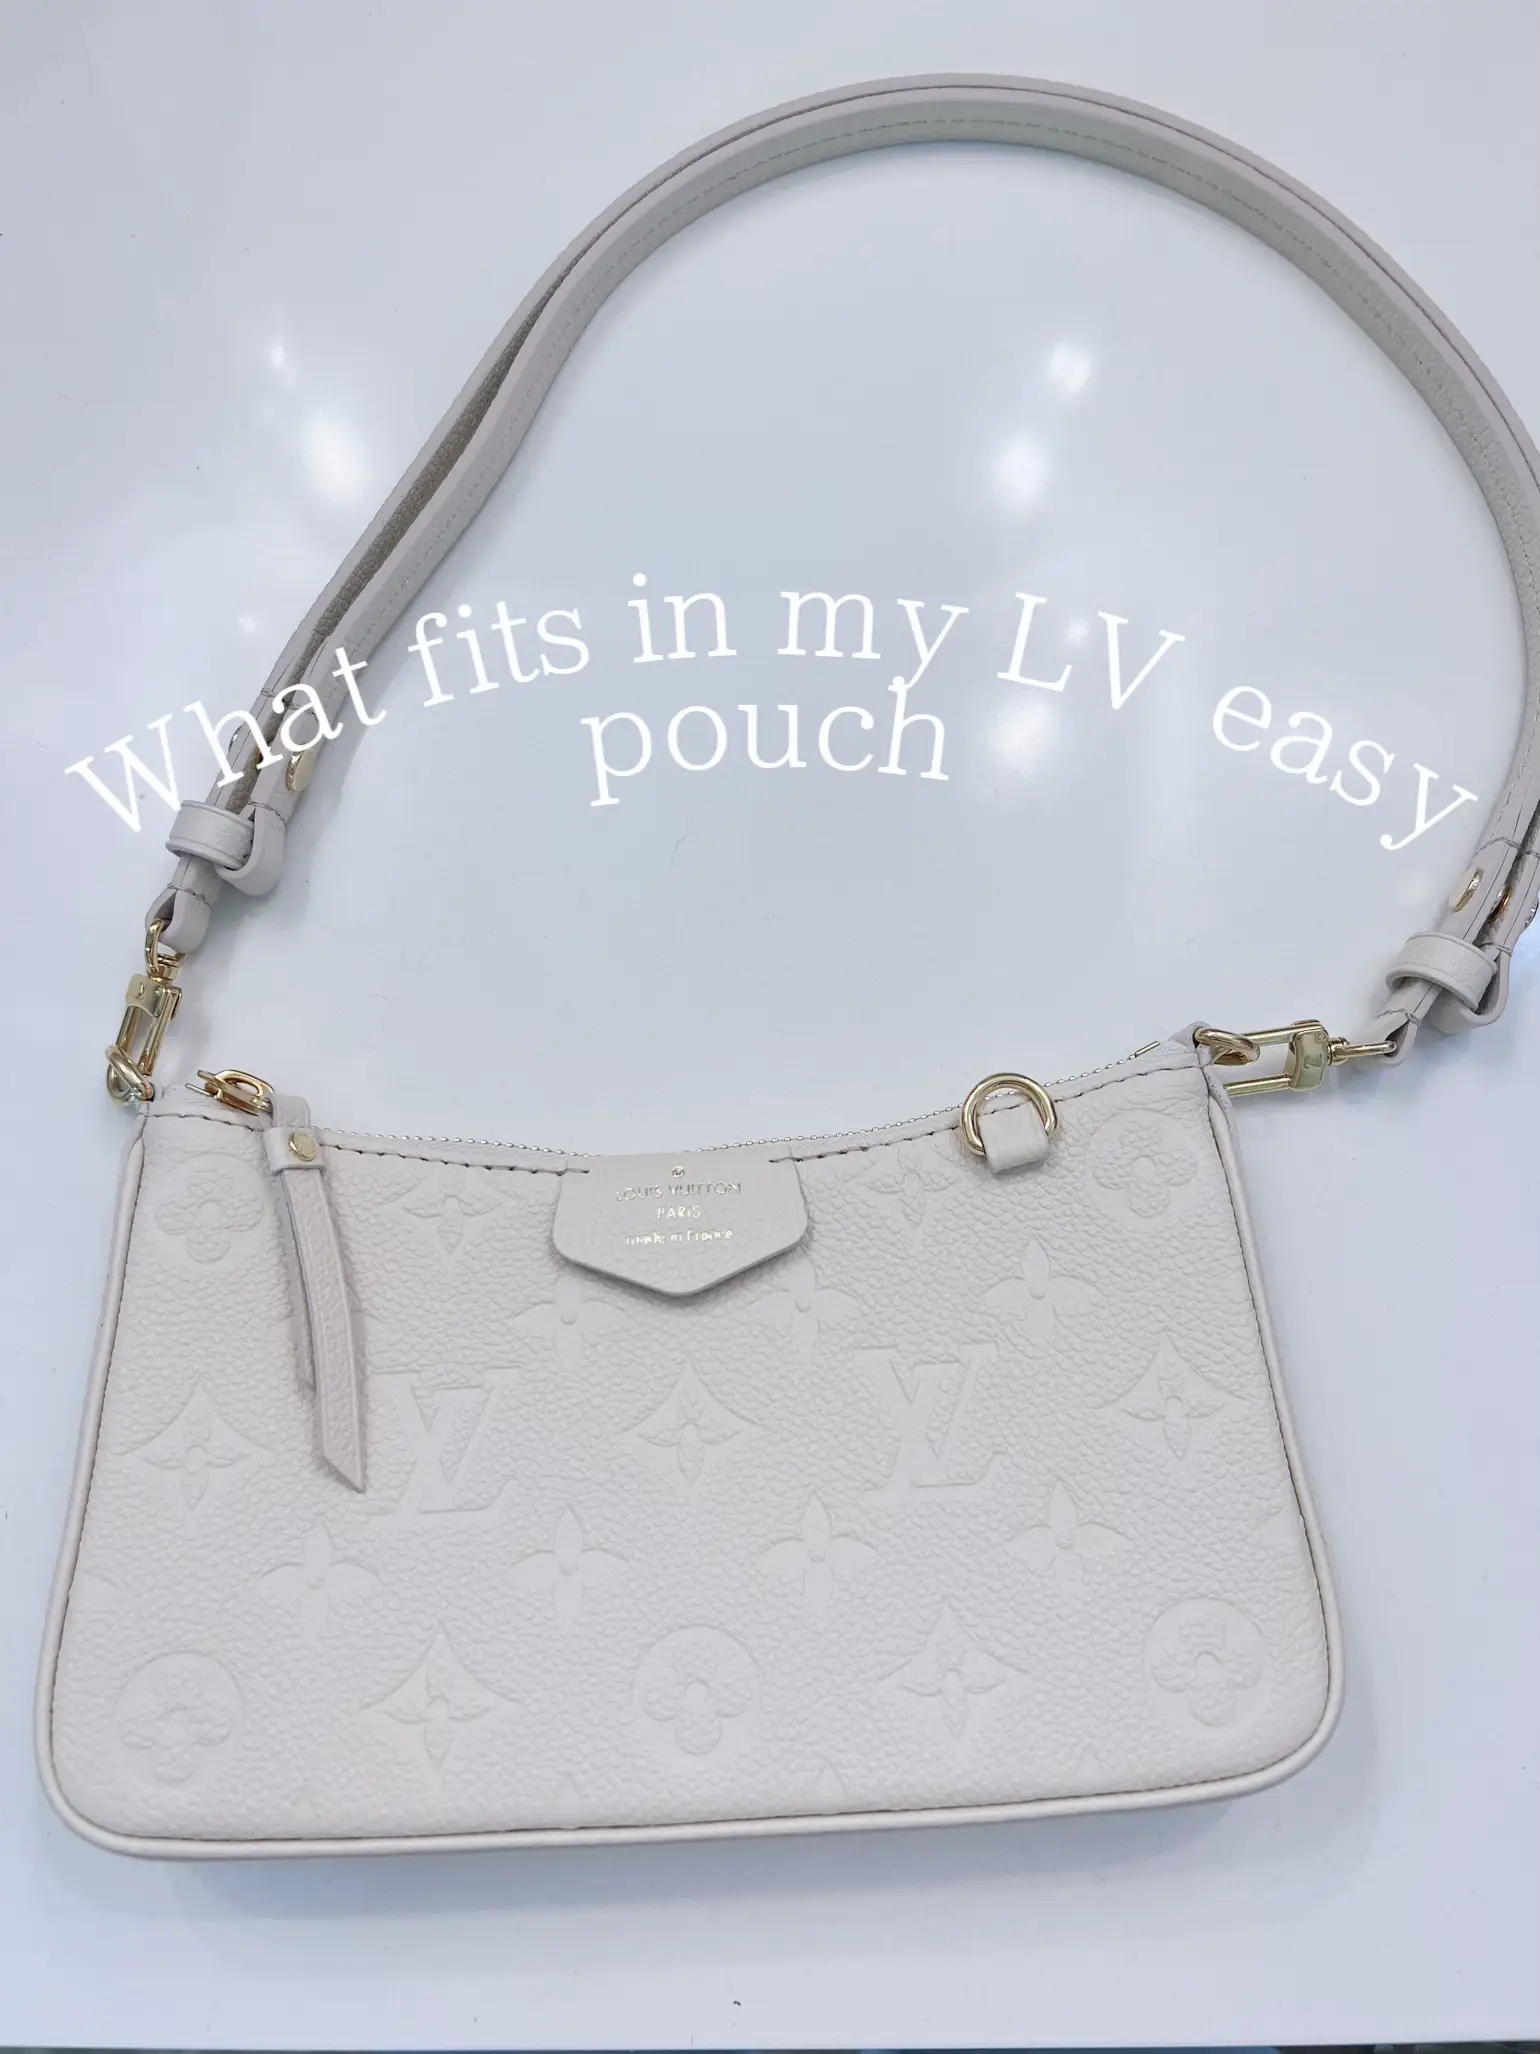 cream vs turtledove easy pouch on strap? : r/Louisvuitton